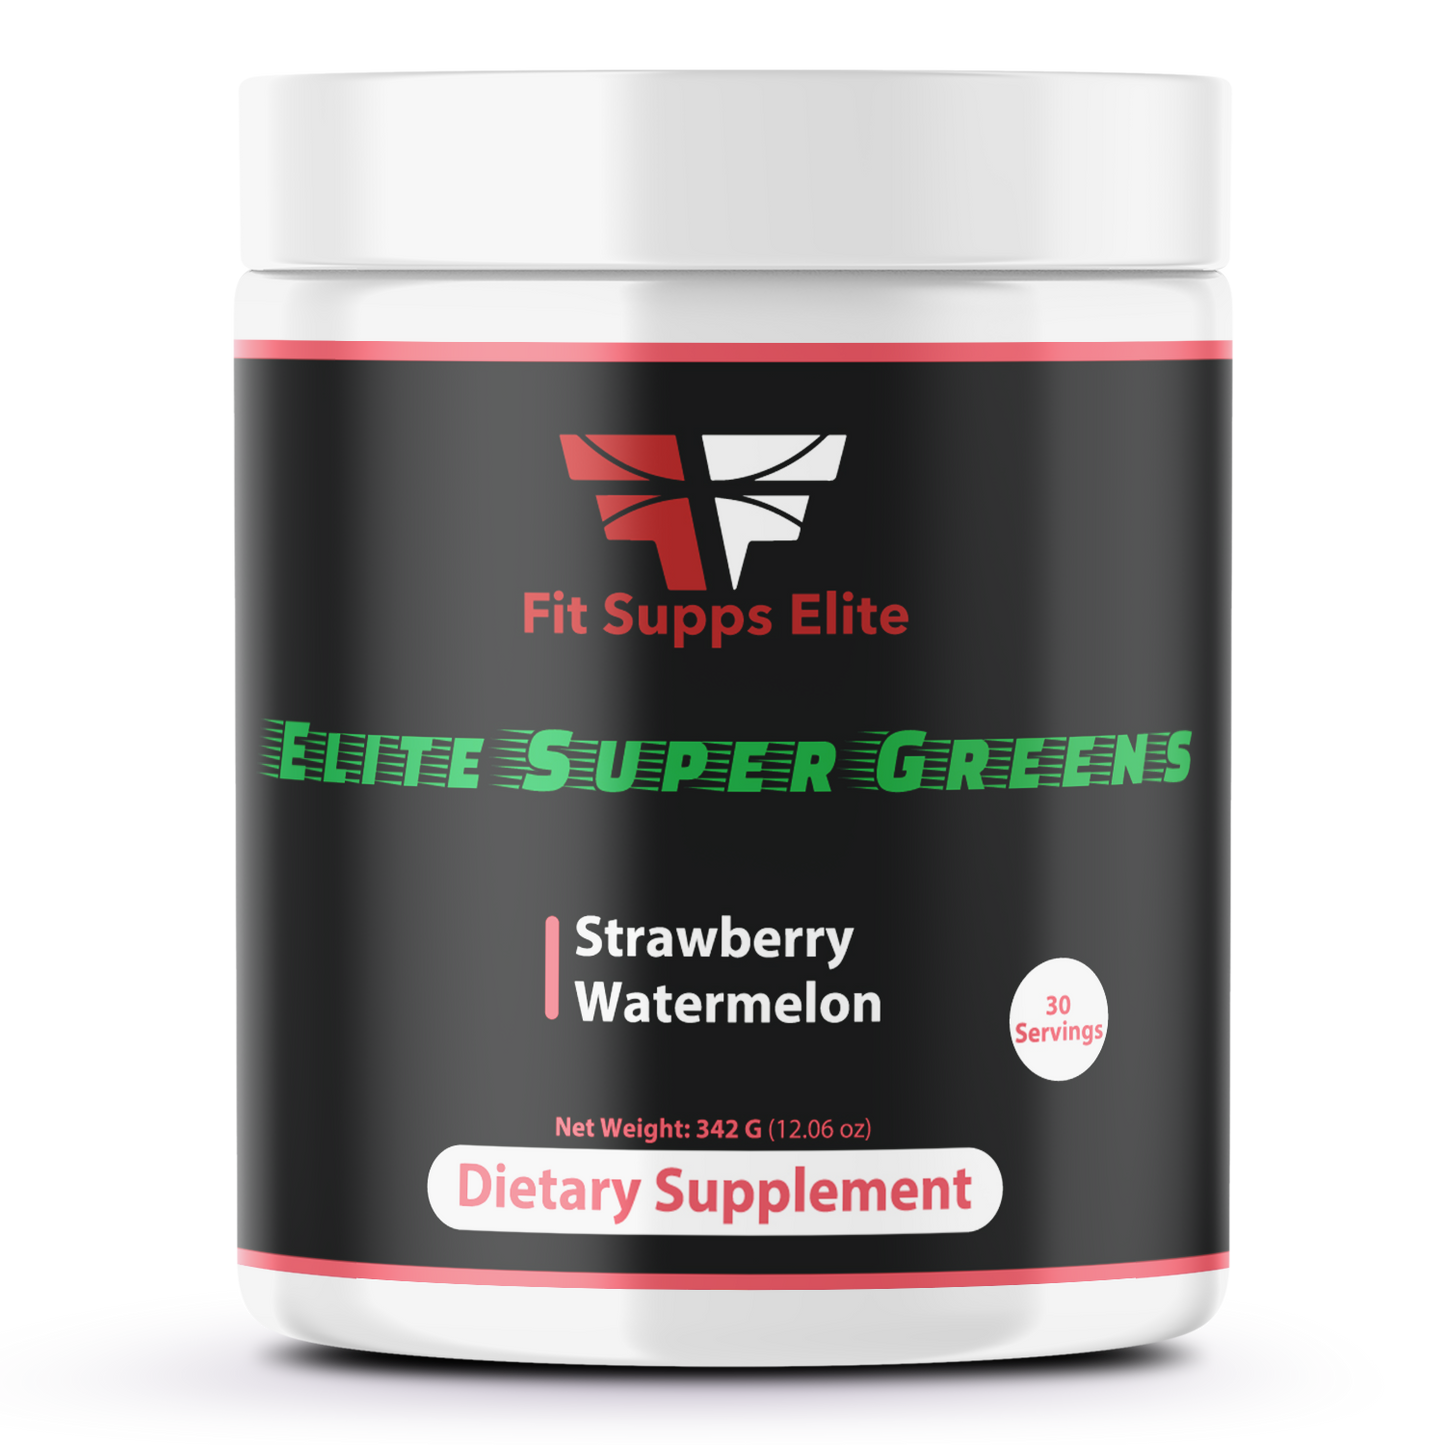 “Elite Super Greens”